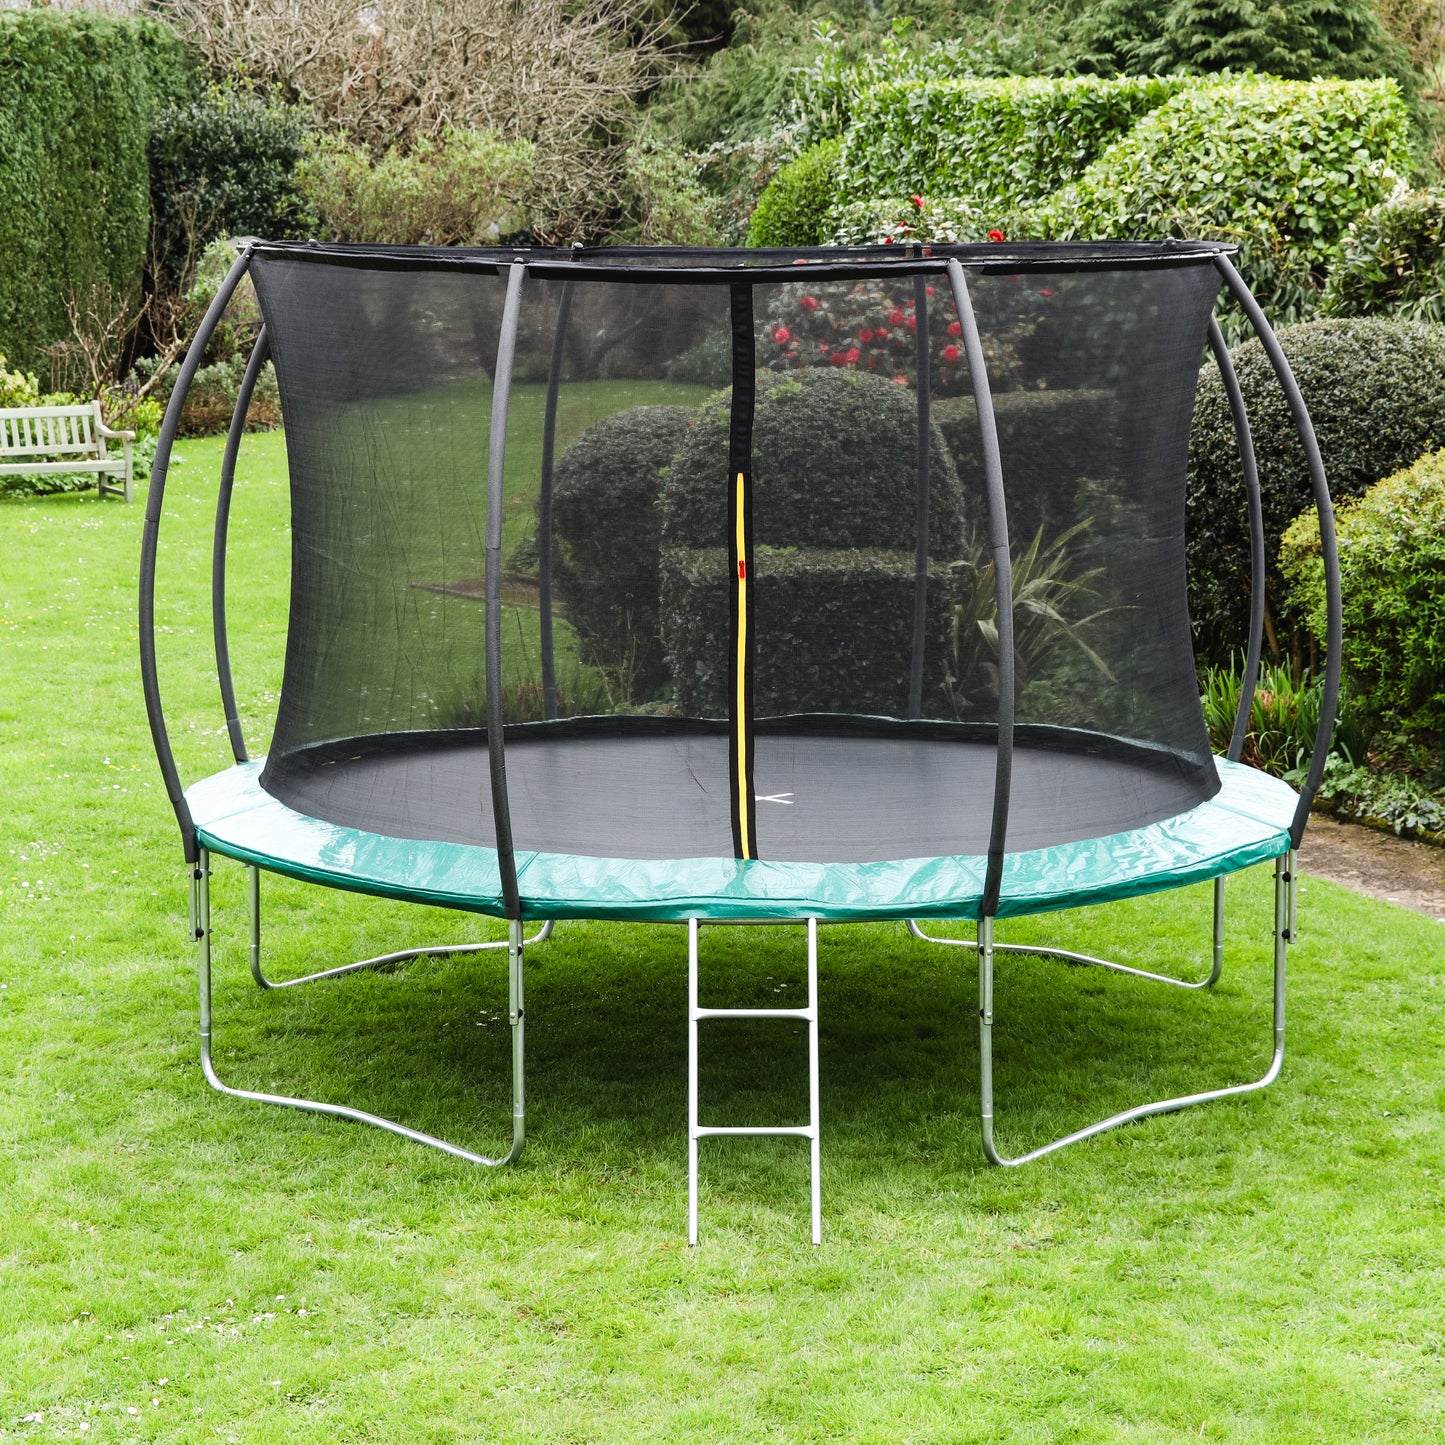 Leapfrog Green 14ft trampoline package